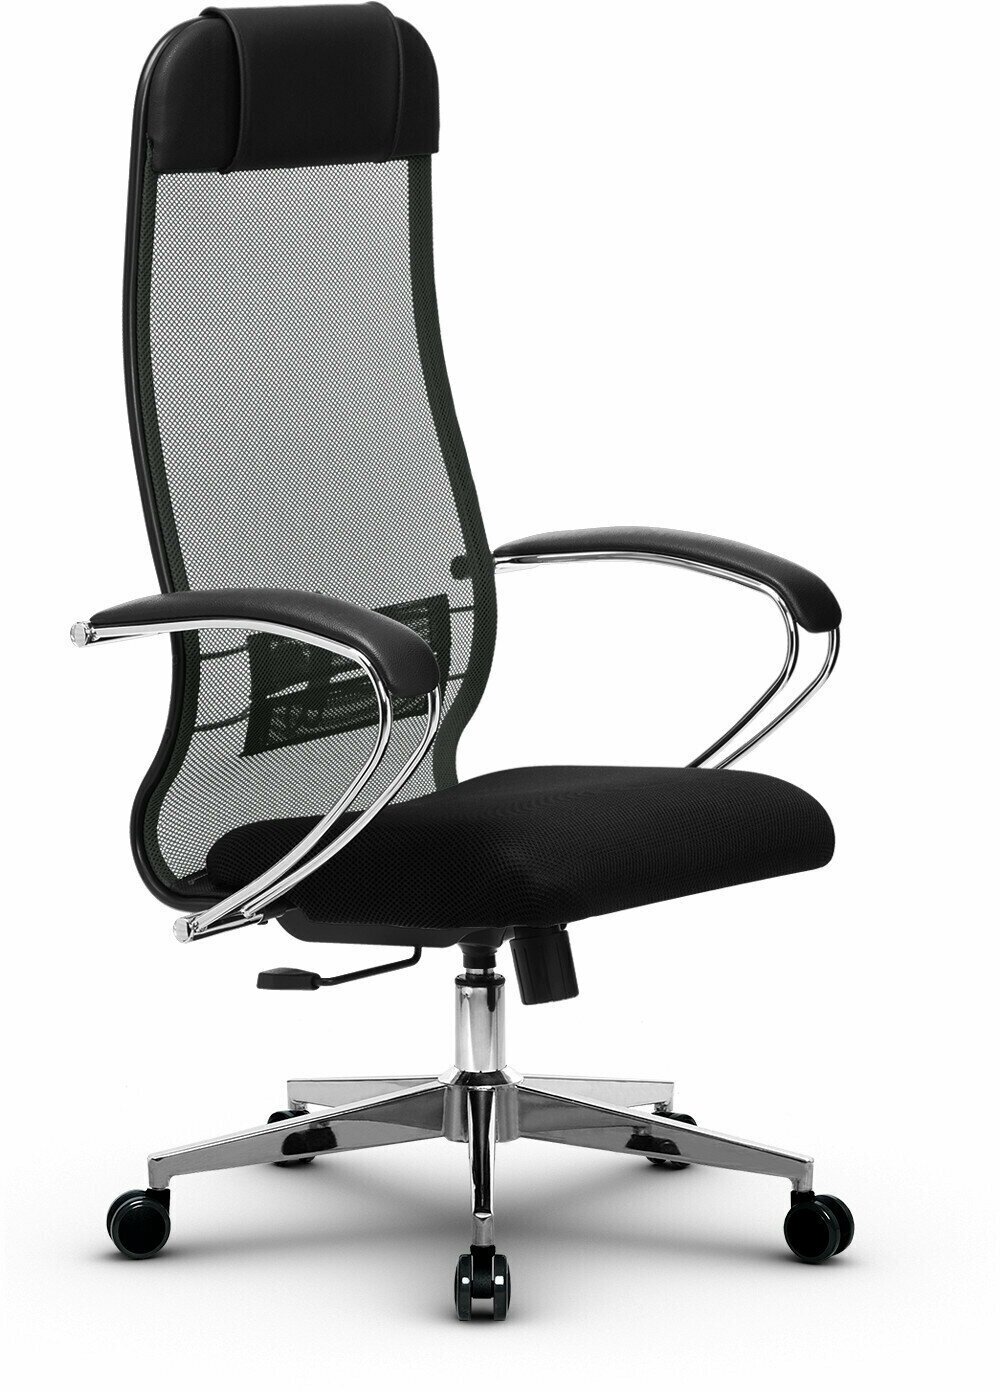 Компьютерное офисное кресло Metta Комплект 18, осн. 004 (17834), Темно-серое/Черное